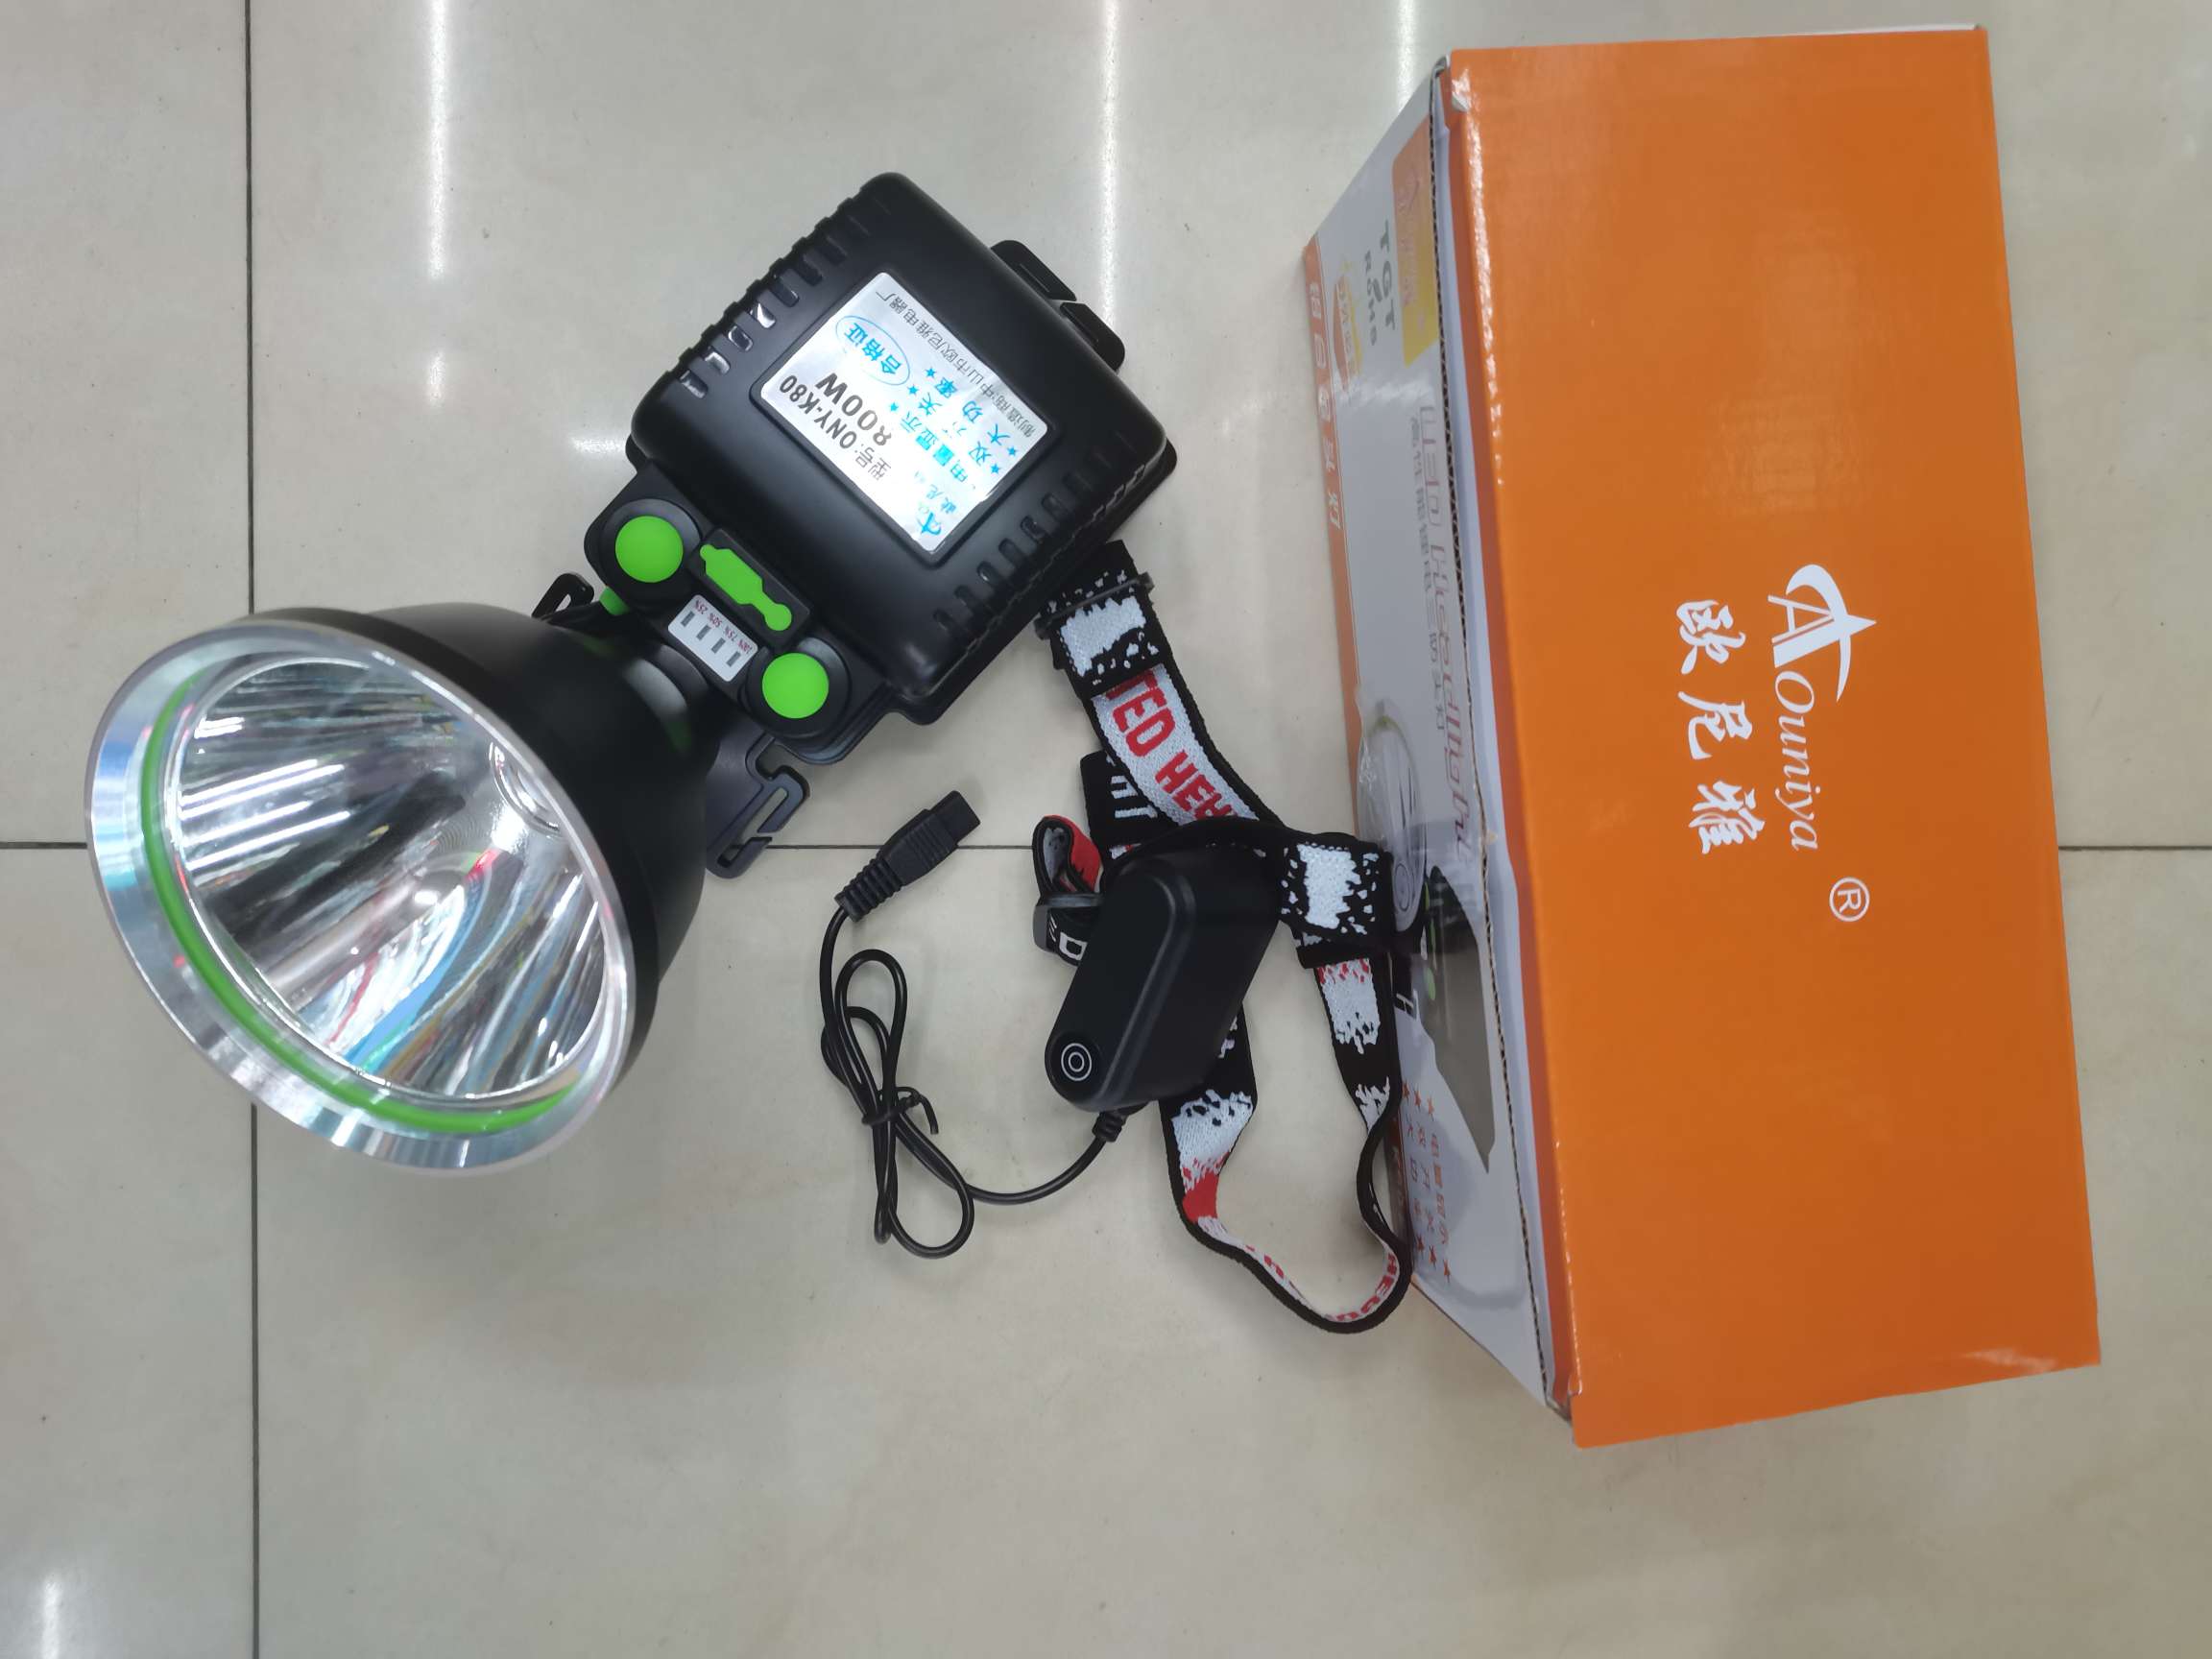 头灯高端多锂电池头灯一件40只有现货随到随拿质量保证强光头灯照明多功能